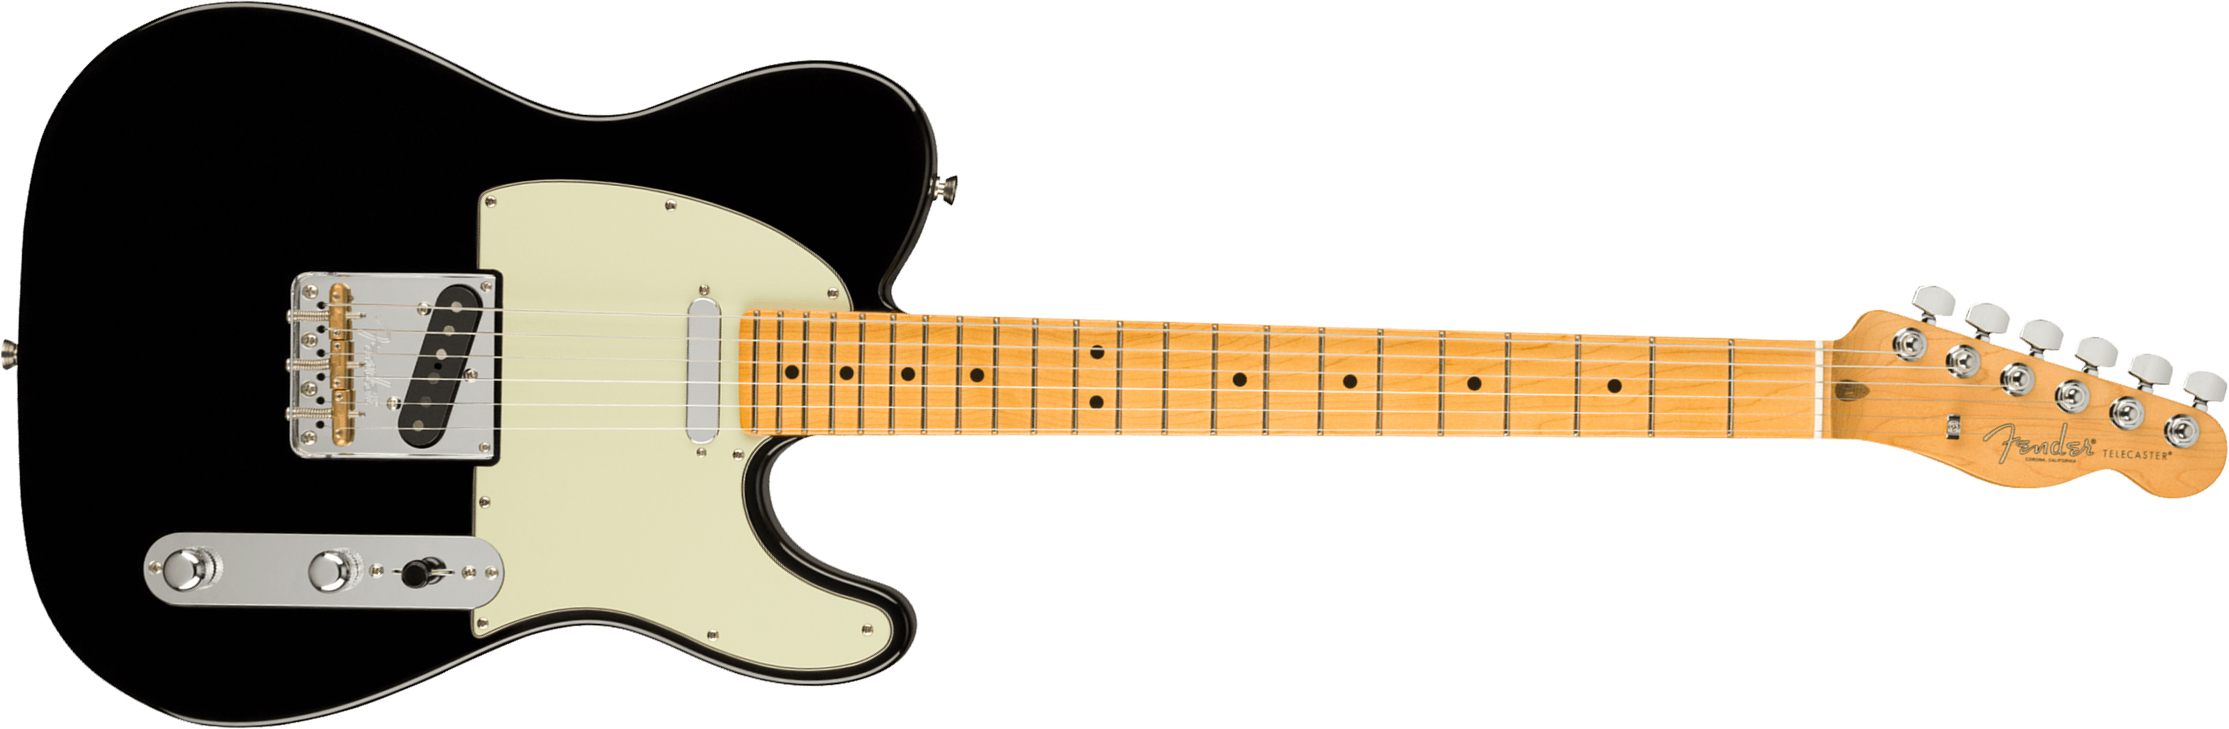 Fender Tele American Professional Ii Usa Mn - Black - E-Gitarre in Teleform - Main picture